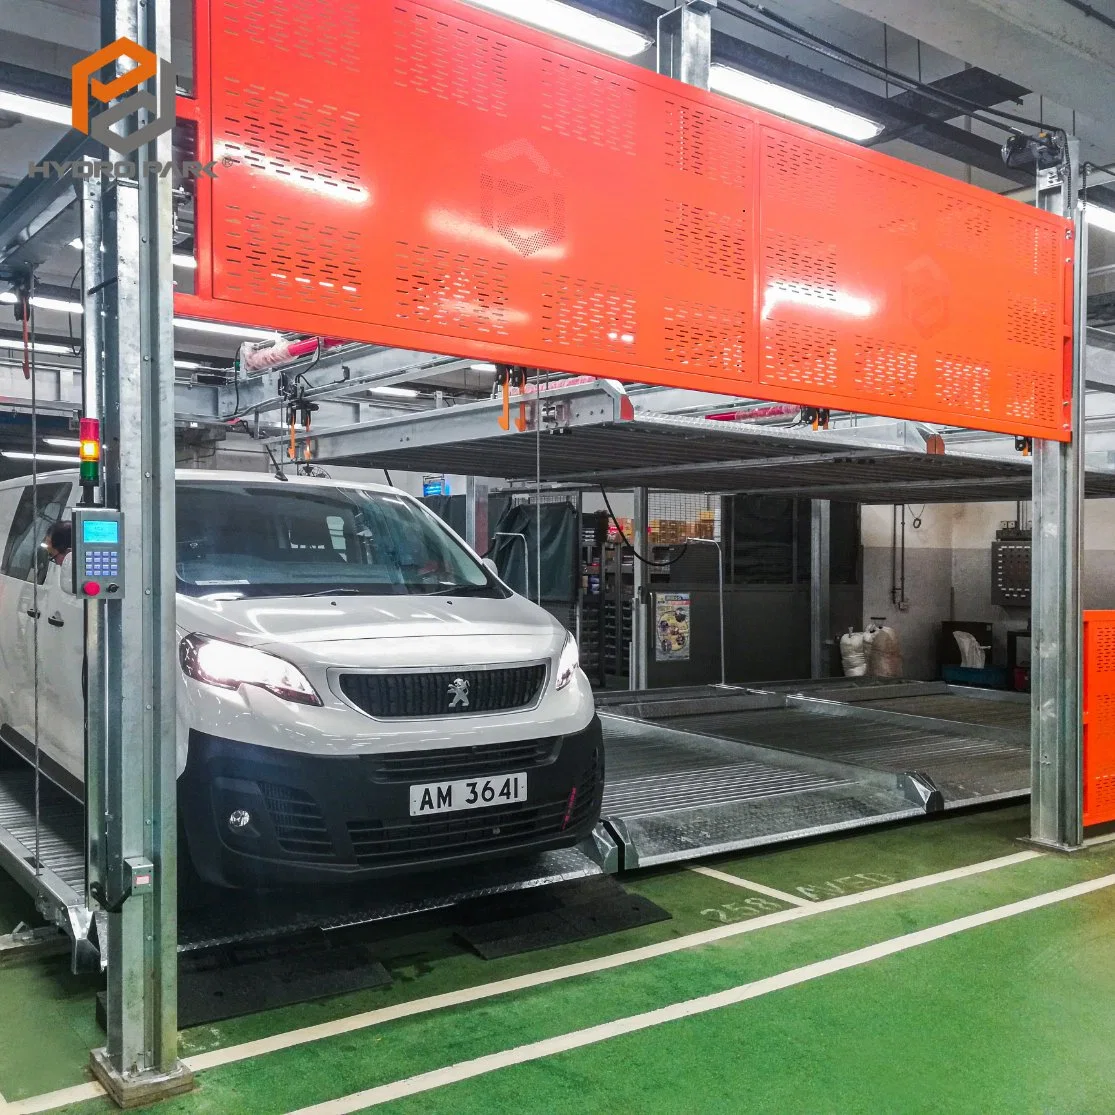 Aparcamiento multinivel equipo de aparcamiento automático del sistema de estacionamiento de autos